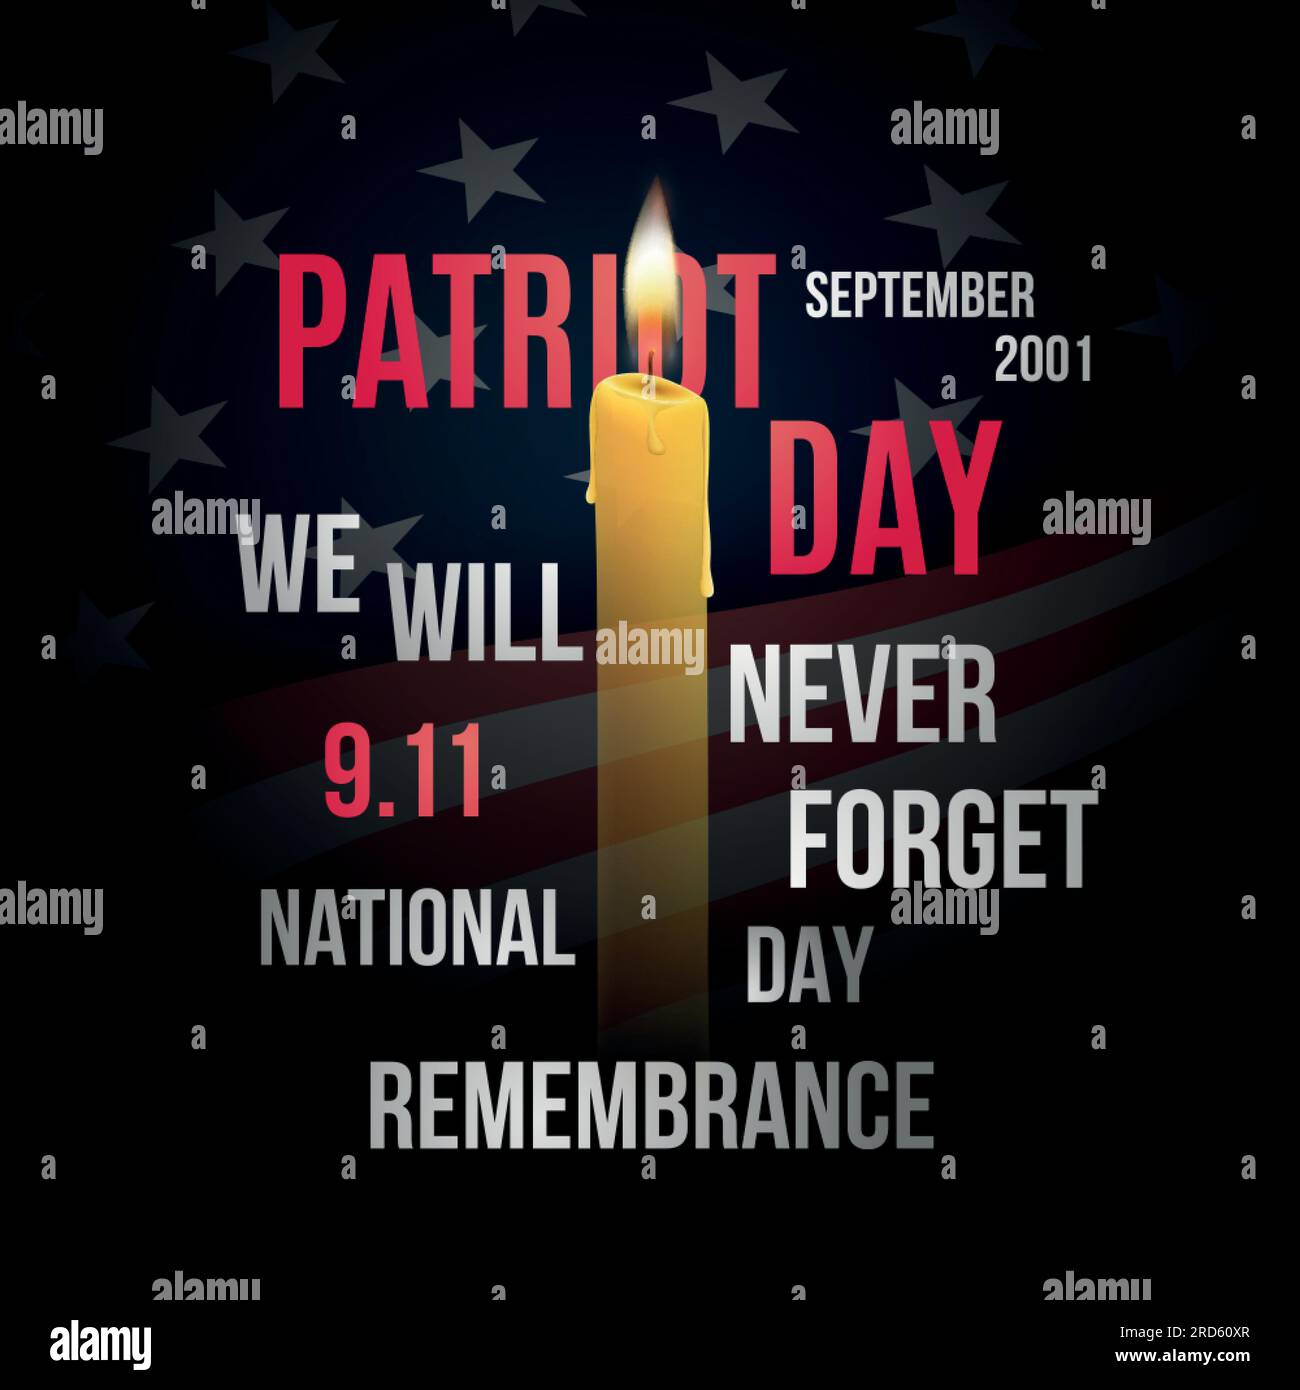 Vektordesign für den Patriot Day mit US-Flagge, Kerzen und Text. Wir werden den 9/11. Gedenktag nie vergessen. Stock Vektor